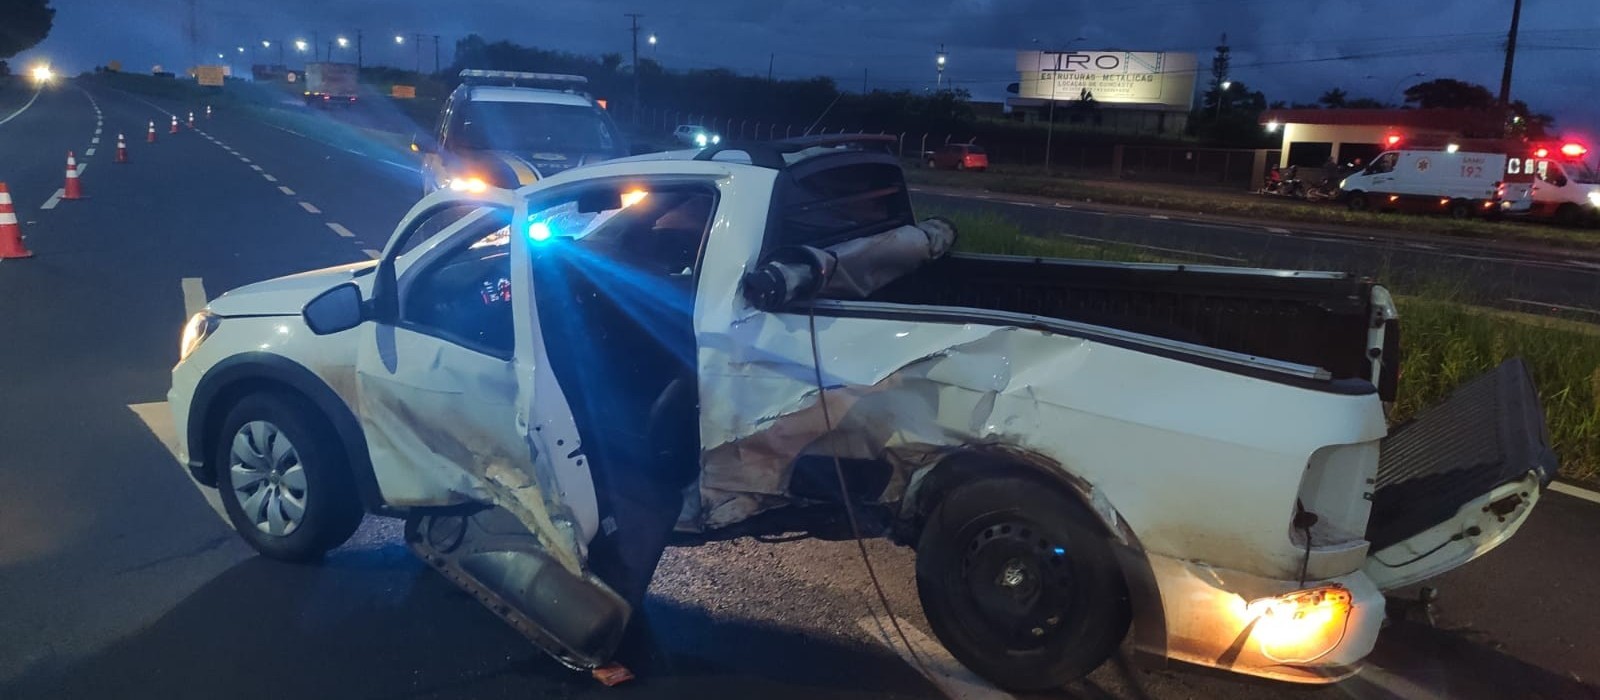 Veículo com placas de Maringá se envolve em grave acidente em Jandaia do Sul; condutor fugiu do local